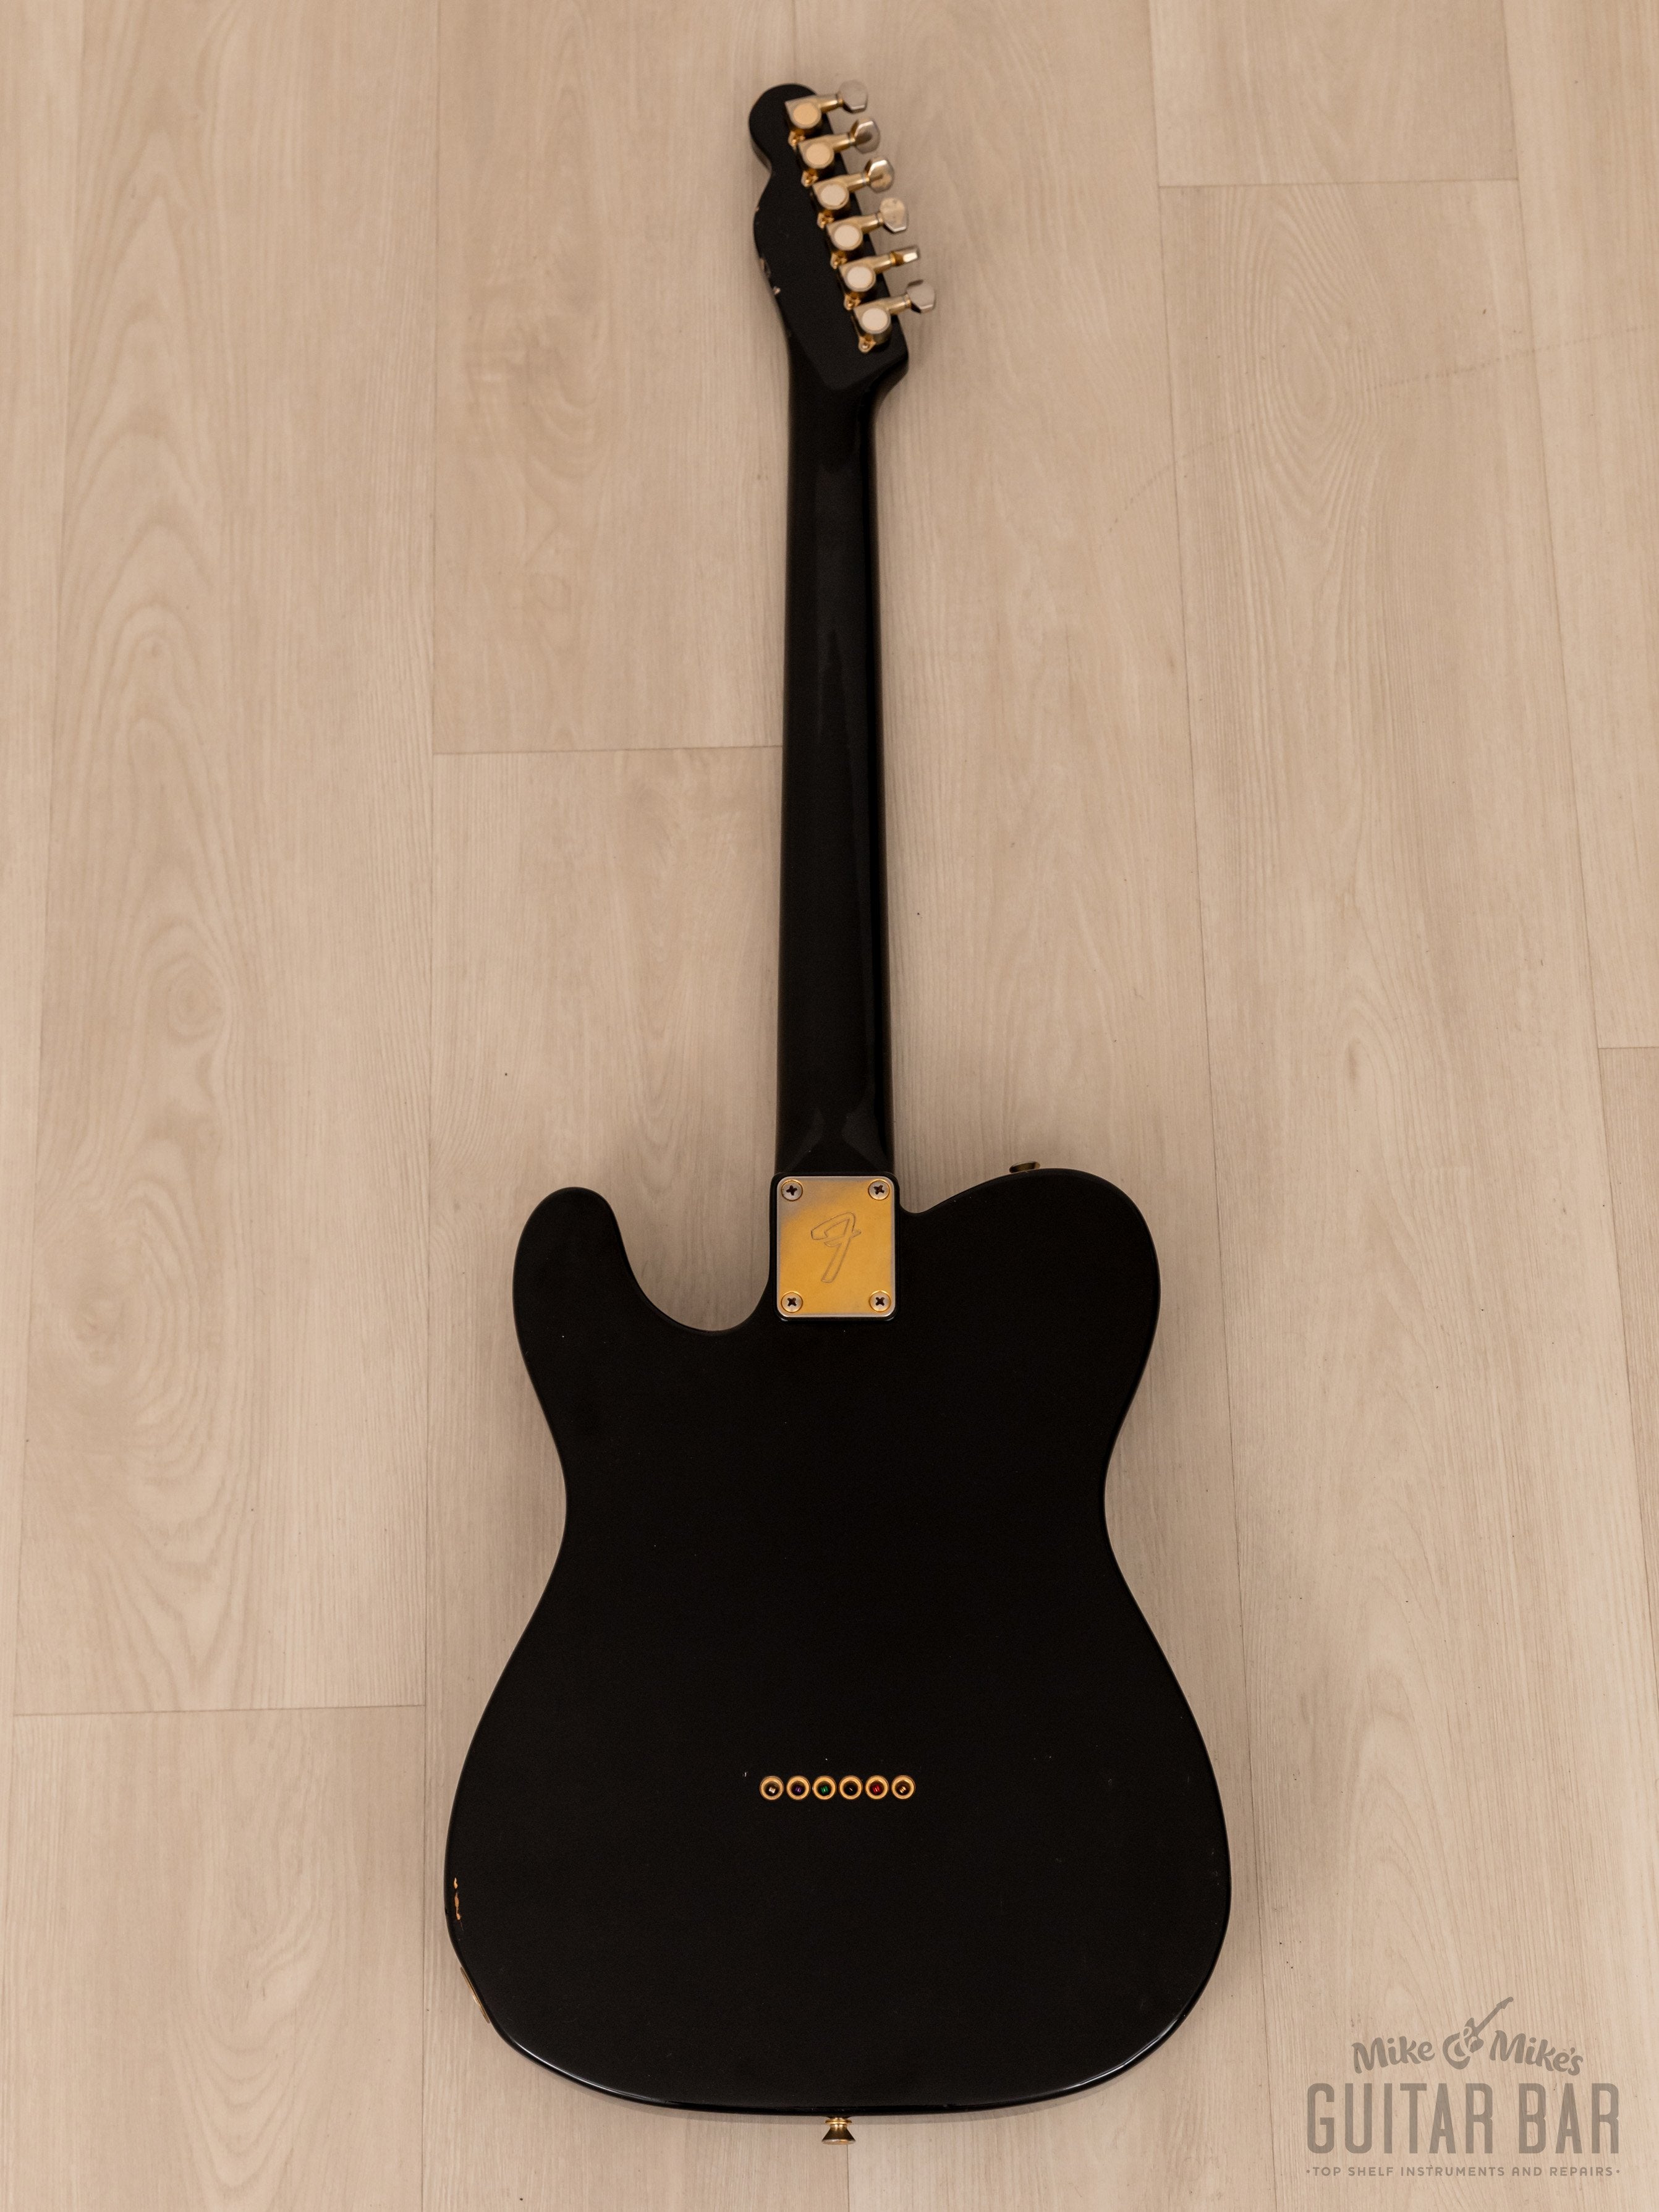 1988 Fender Telecaster TLG60-80 Vintage Guitar Black w/ Gold Hardware & Case, Japan MIJ Fujigen